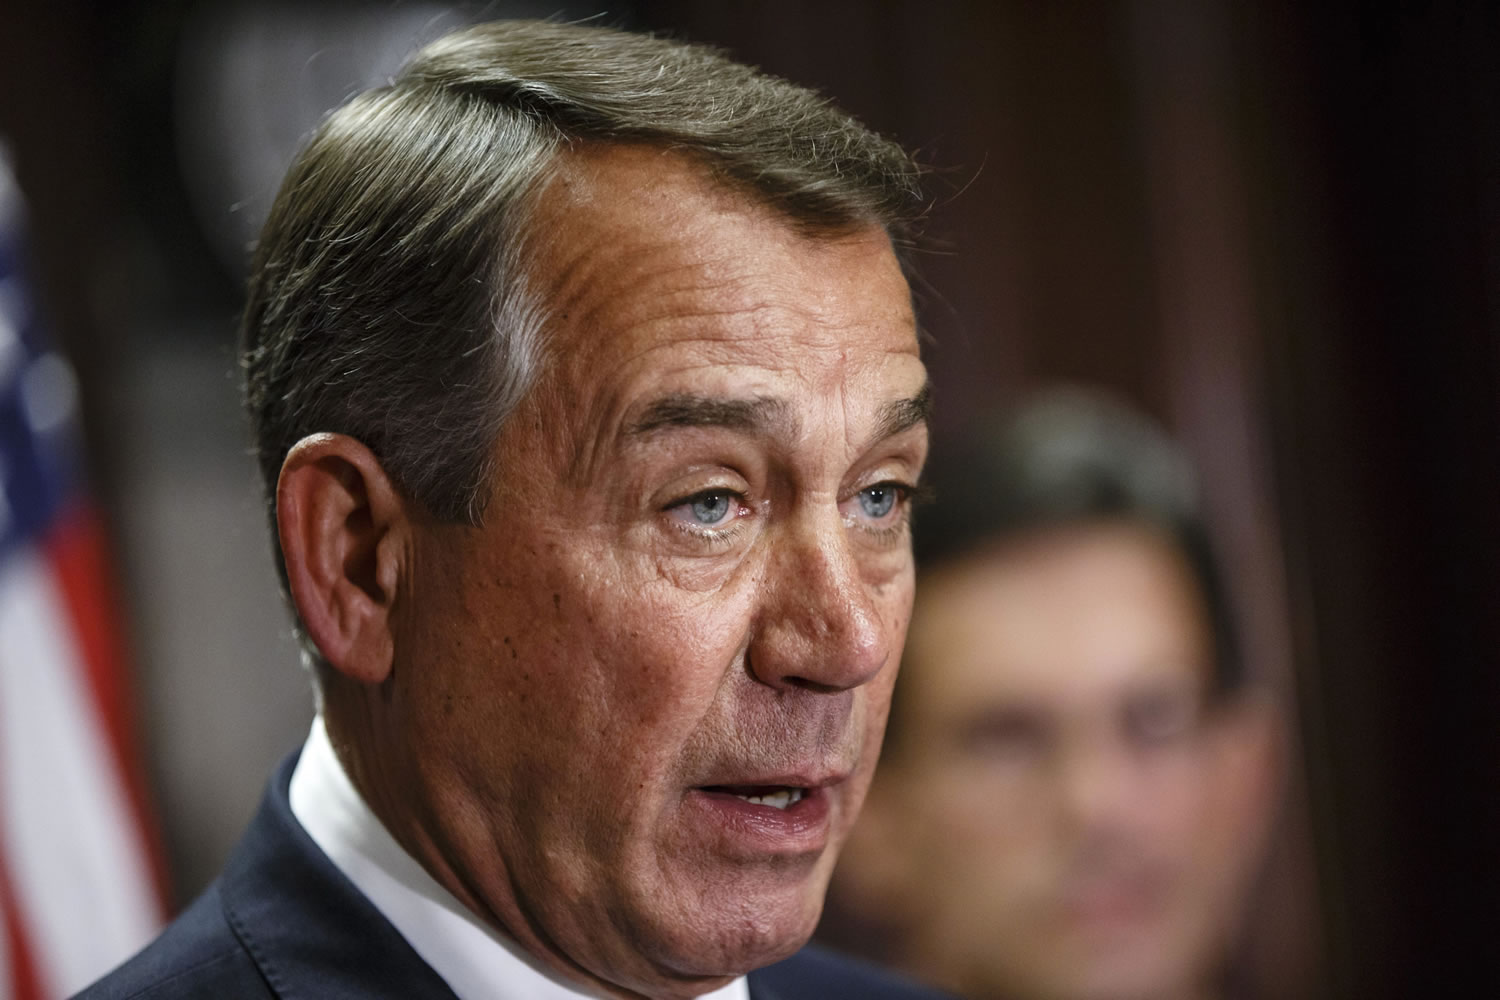 House Speaker John Boehner of Ohio announced Friday he will resign at the end of October.